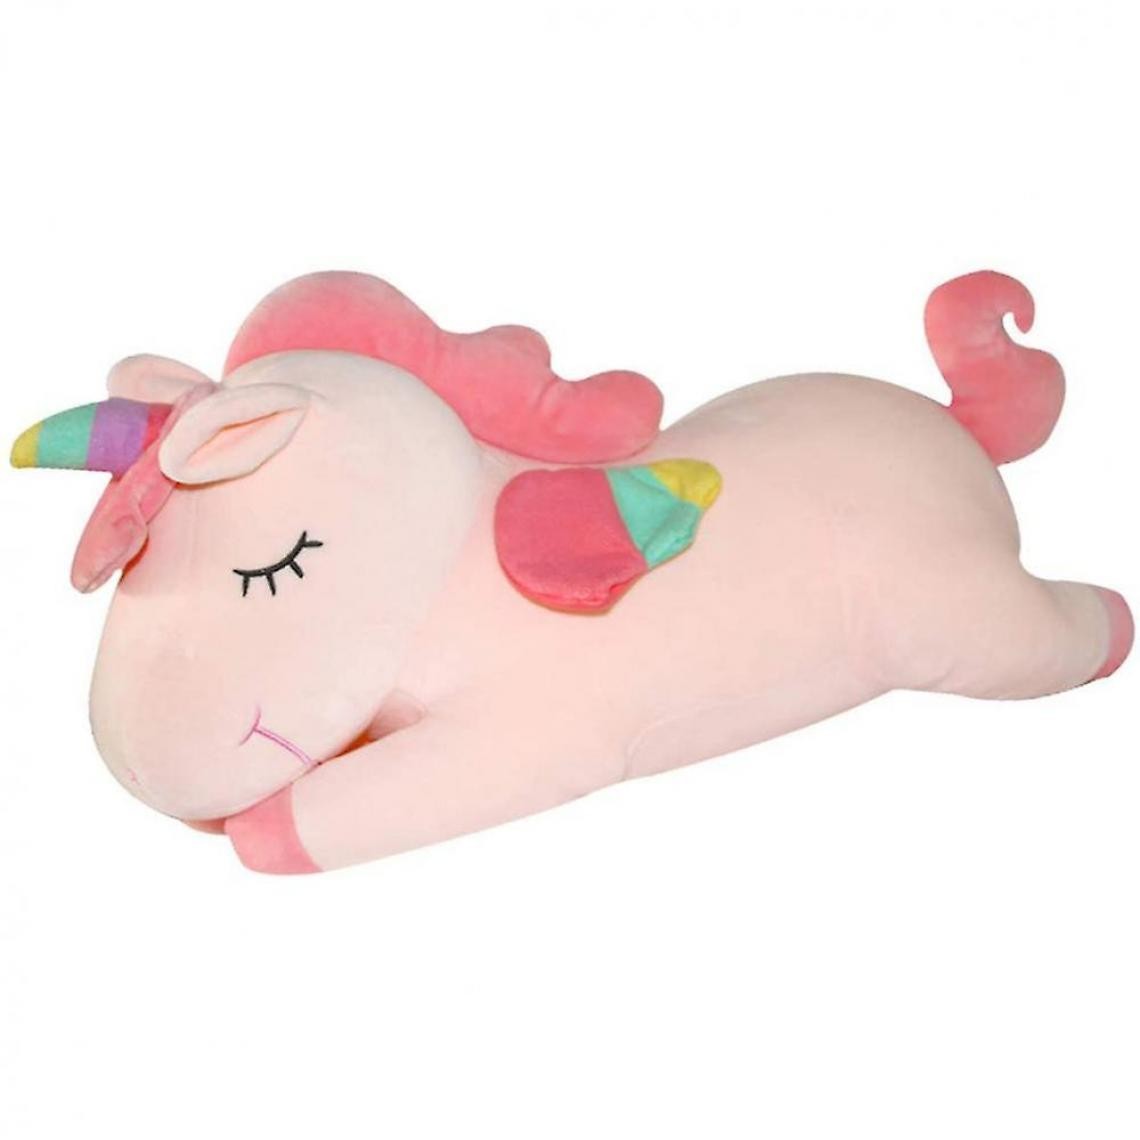 Universal - Licorne peluche animal peluche jouet pour les enfants 15,8 pouces mignonne poupée douce (rose) - Animaux